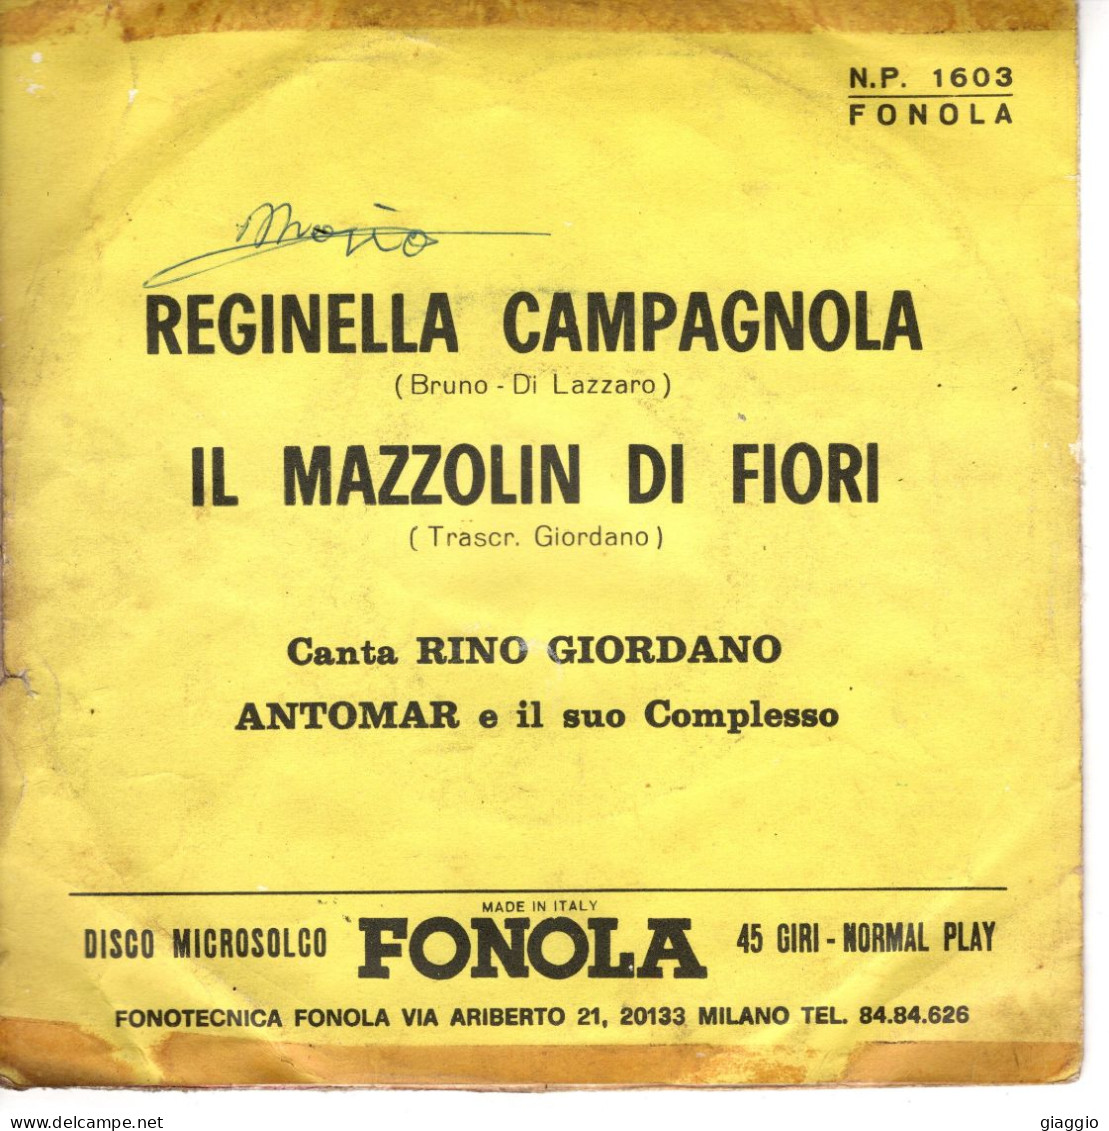 °°° 576) 45 GIRI - R. GIORDANO E ANTOMAR COMPLESSO - REGINELLA CAMPAGNOLA / IL MAZZOLIN DI FIORI °°° - Other - Italian Music